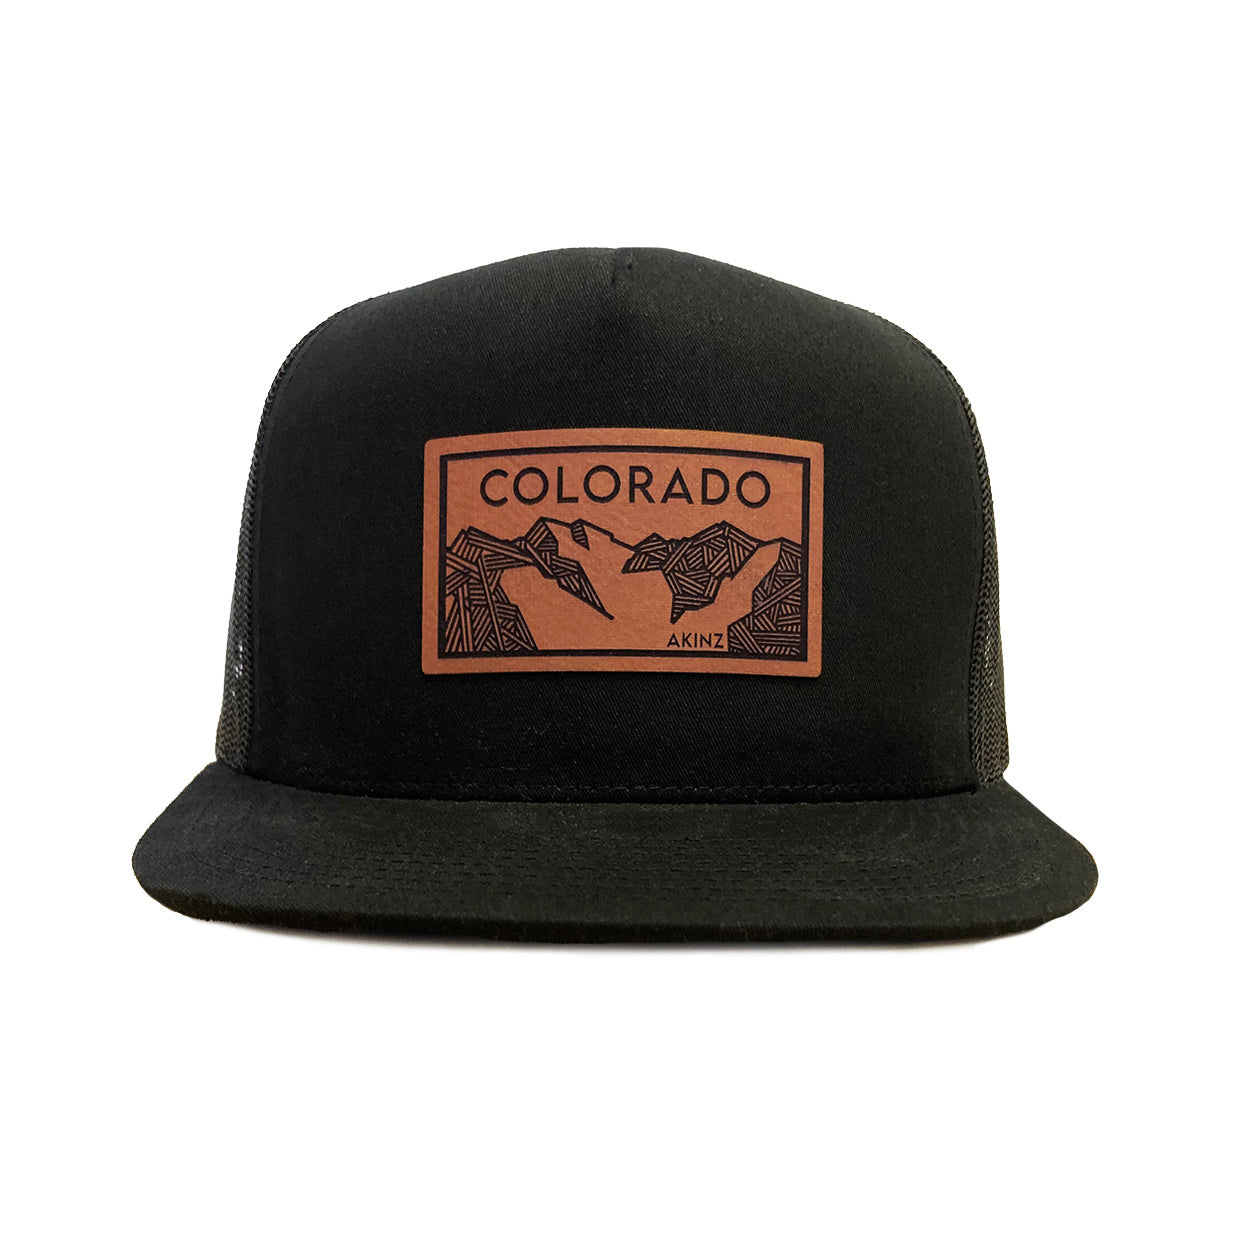 Colorado-patch-hat-black_1be82d71-0789-4db9-843d-2243e176f12b.jpg